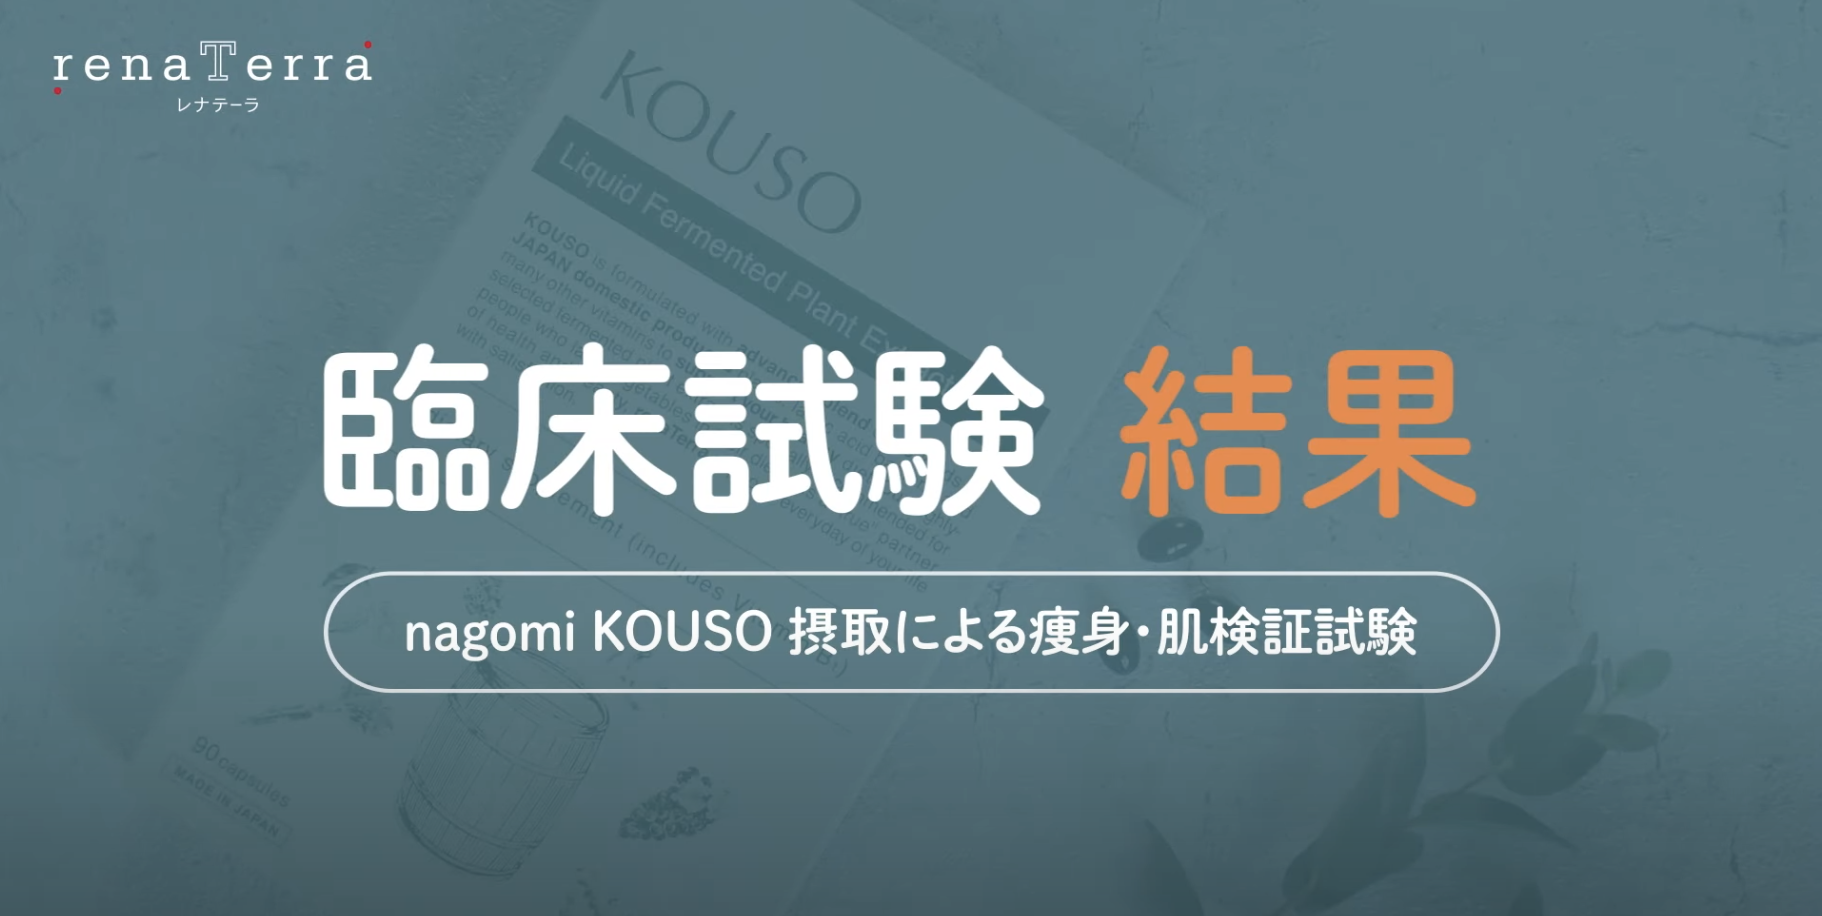 nagomi KOUSO 3ヶ月の臨床試験ダイエット